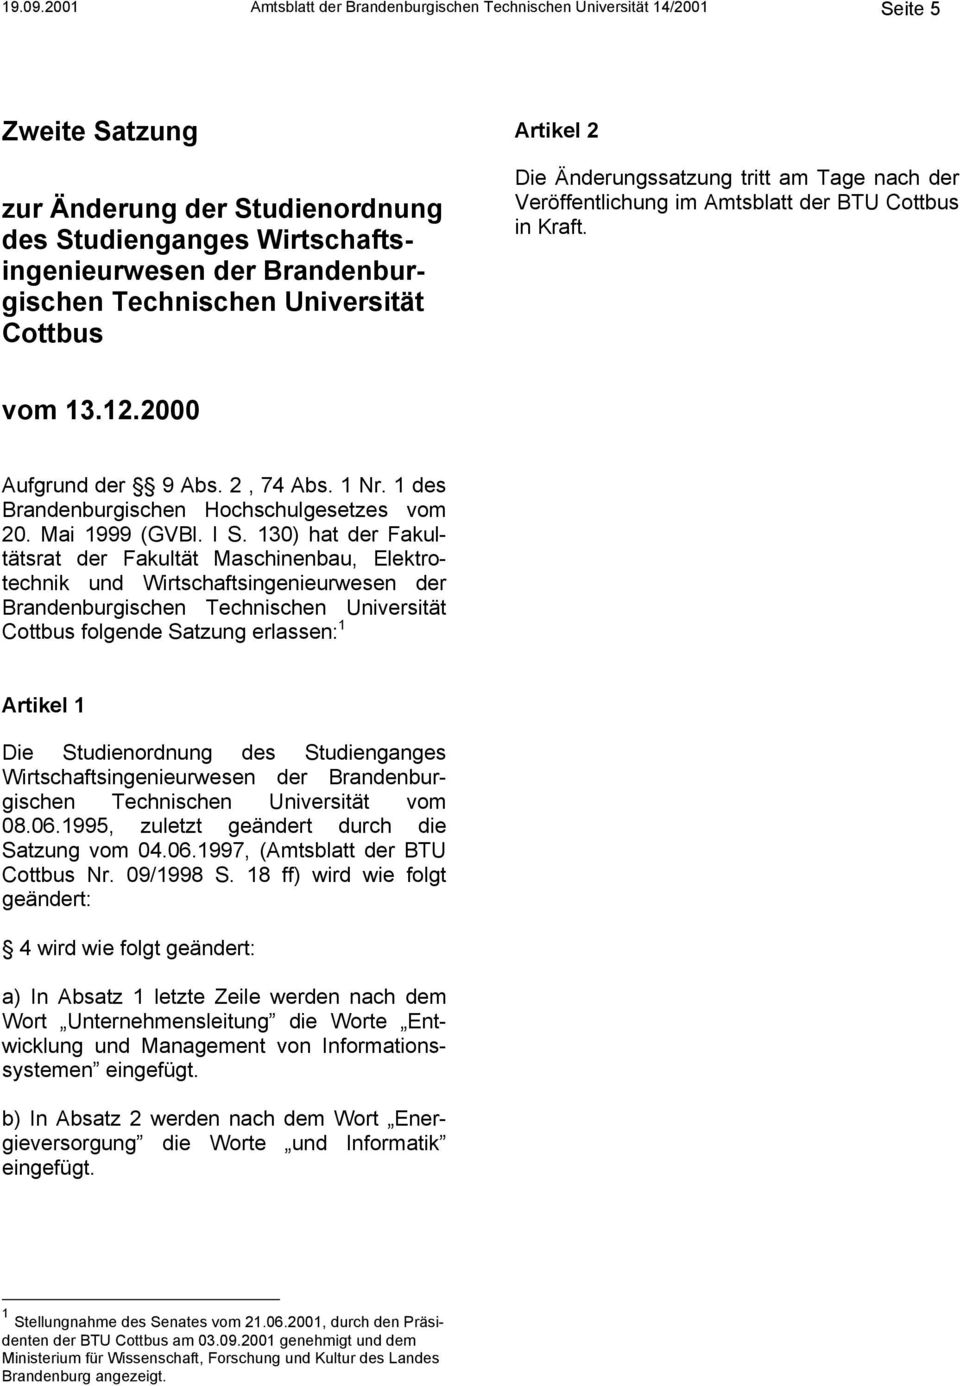 Technischen Universität Cottbus Artikel 2 Die Änderungssatzung tritt am Tage nach der Veröffentlichung im Amtsblatt der BTU Cottbus in Kraft. vom 13.12.2000 Aufgrund der 9 Abs. 2, 74 Abs. 1 Nr.